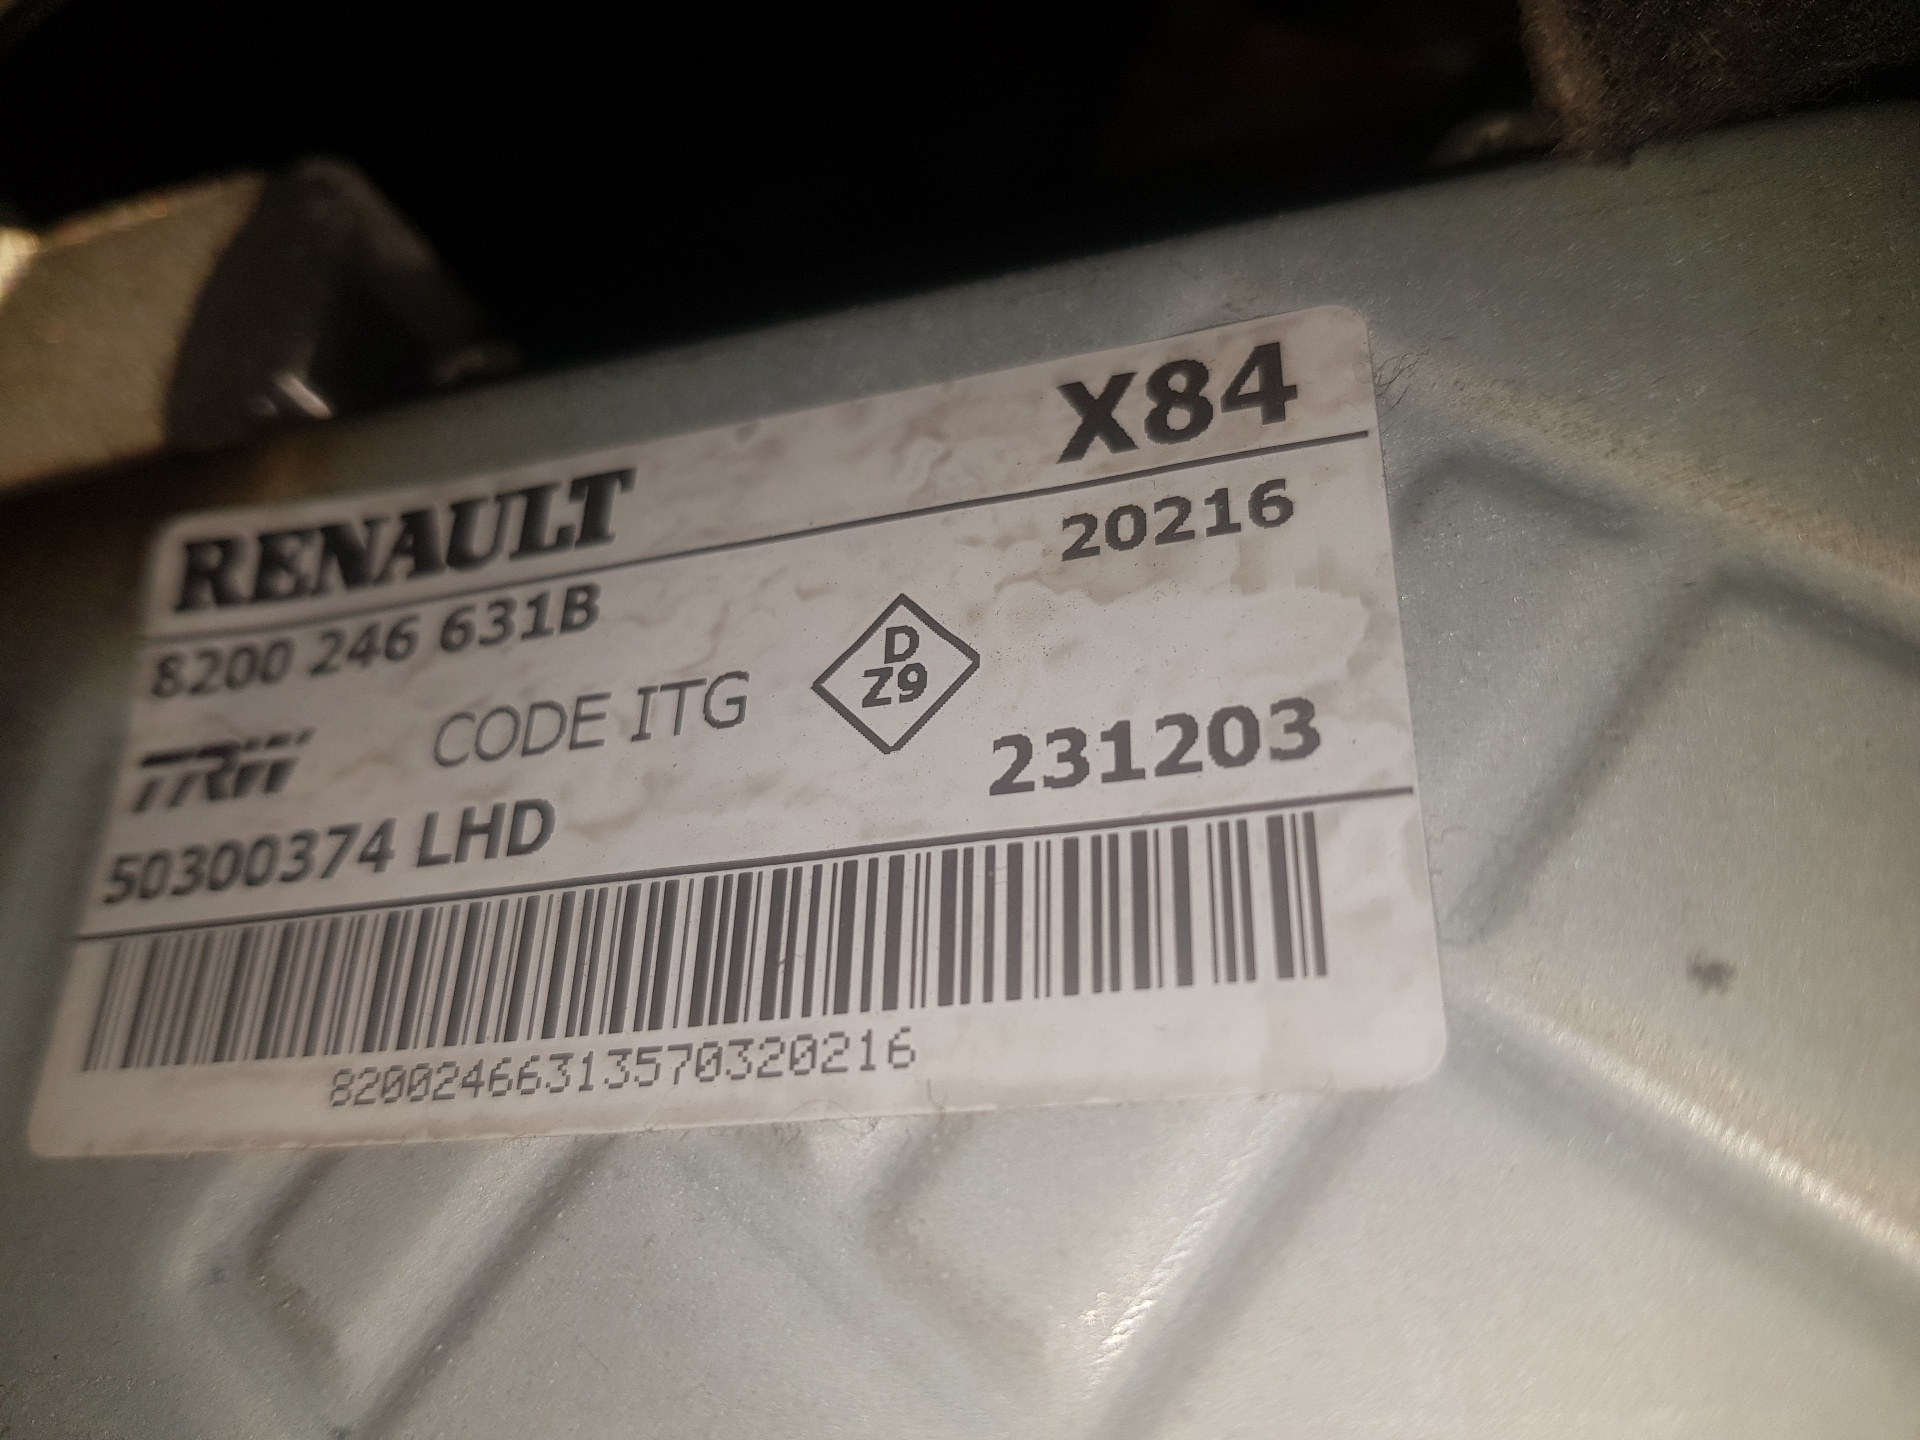 RENAULT Megane 2 generation (2002-2012) Steering Column Mechanism 8200246631B, 8200246631B 25233645